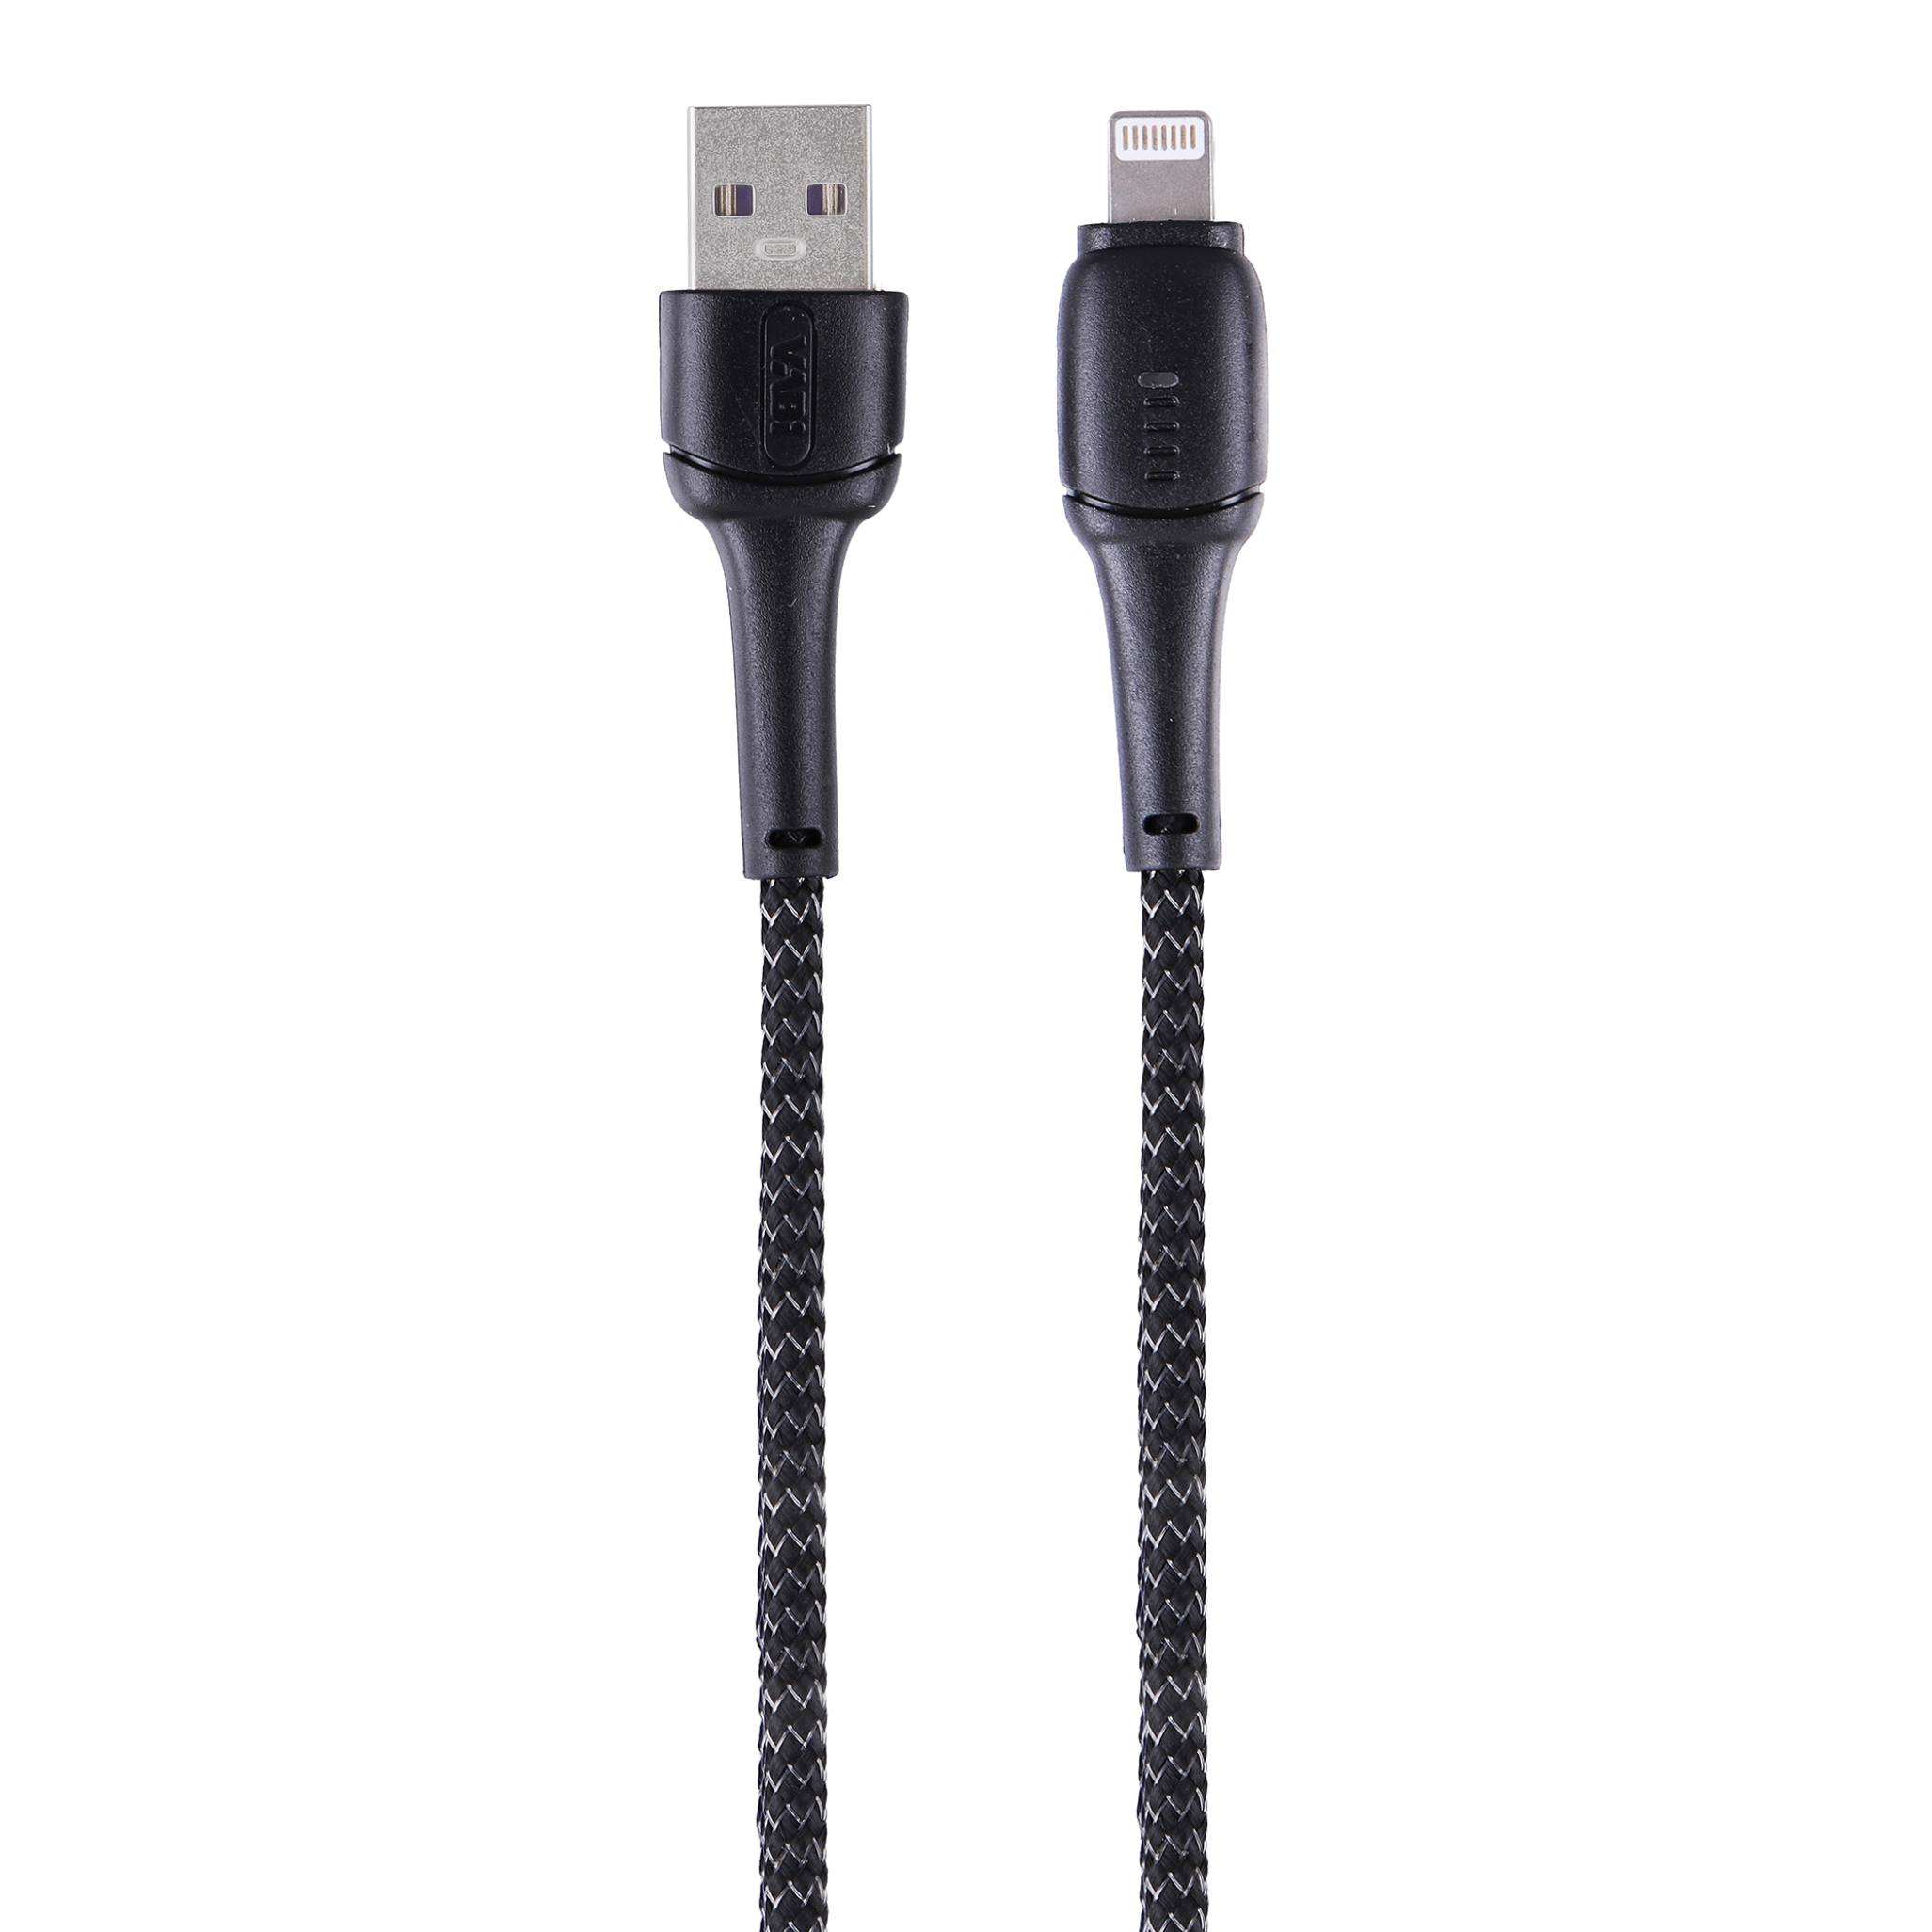  کابل تبدیل USB به Lightning وابی مدل CA39 